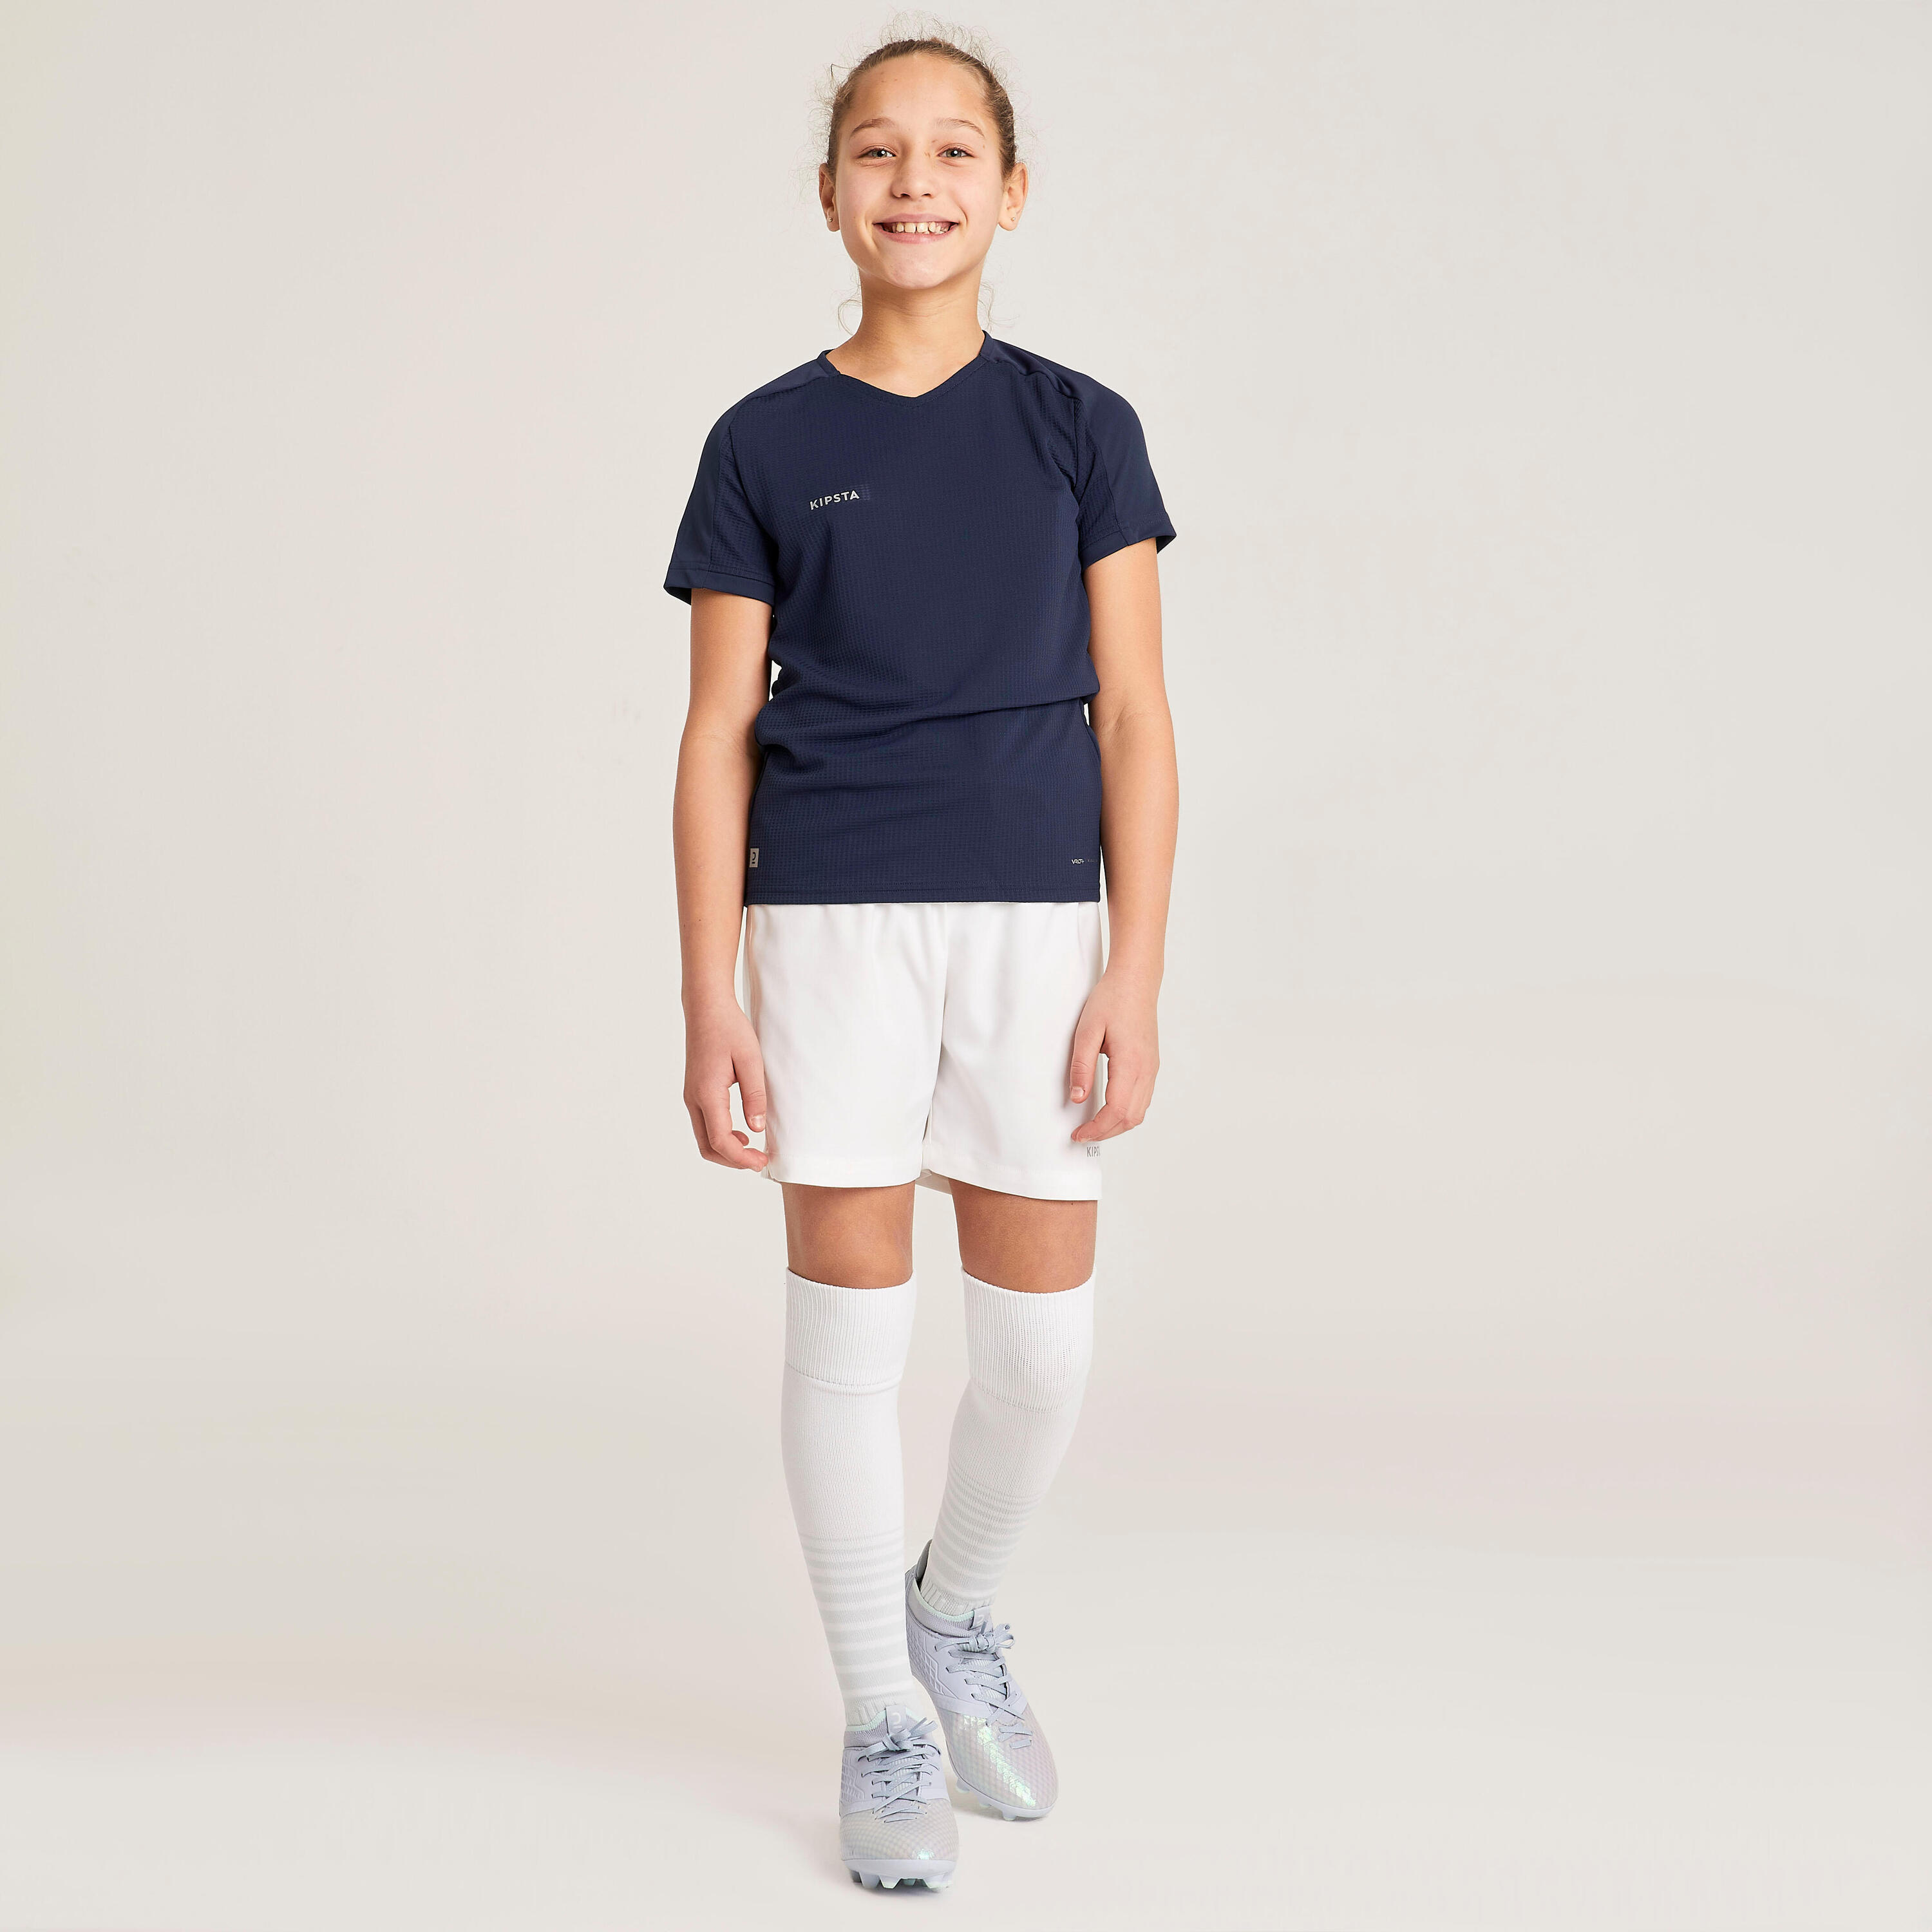 Girls' Football Shirt Viralto - Blue 11/12